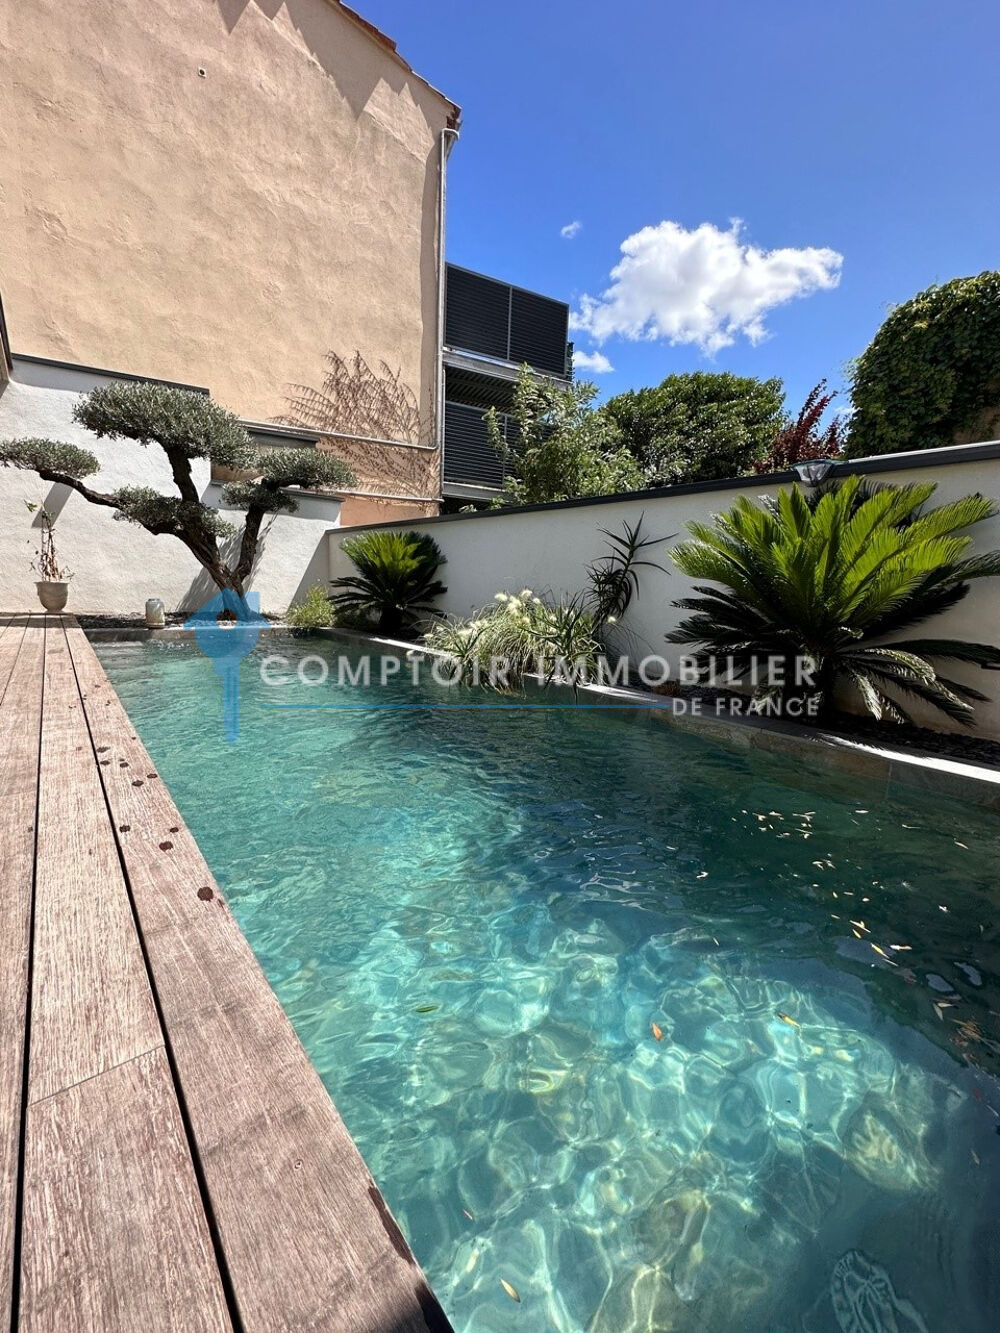 Vente Loft Immobilier de prestige : loft  vendre avec terrasse, piscine, garage T5  Als Ales